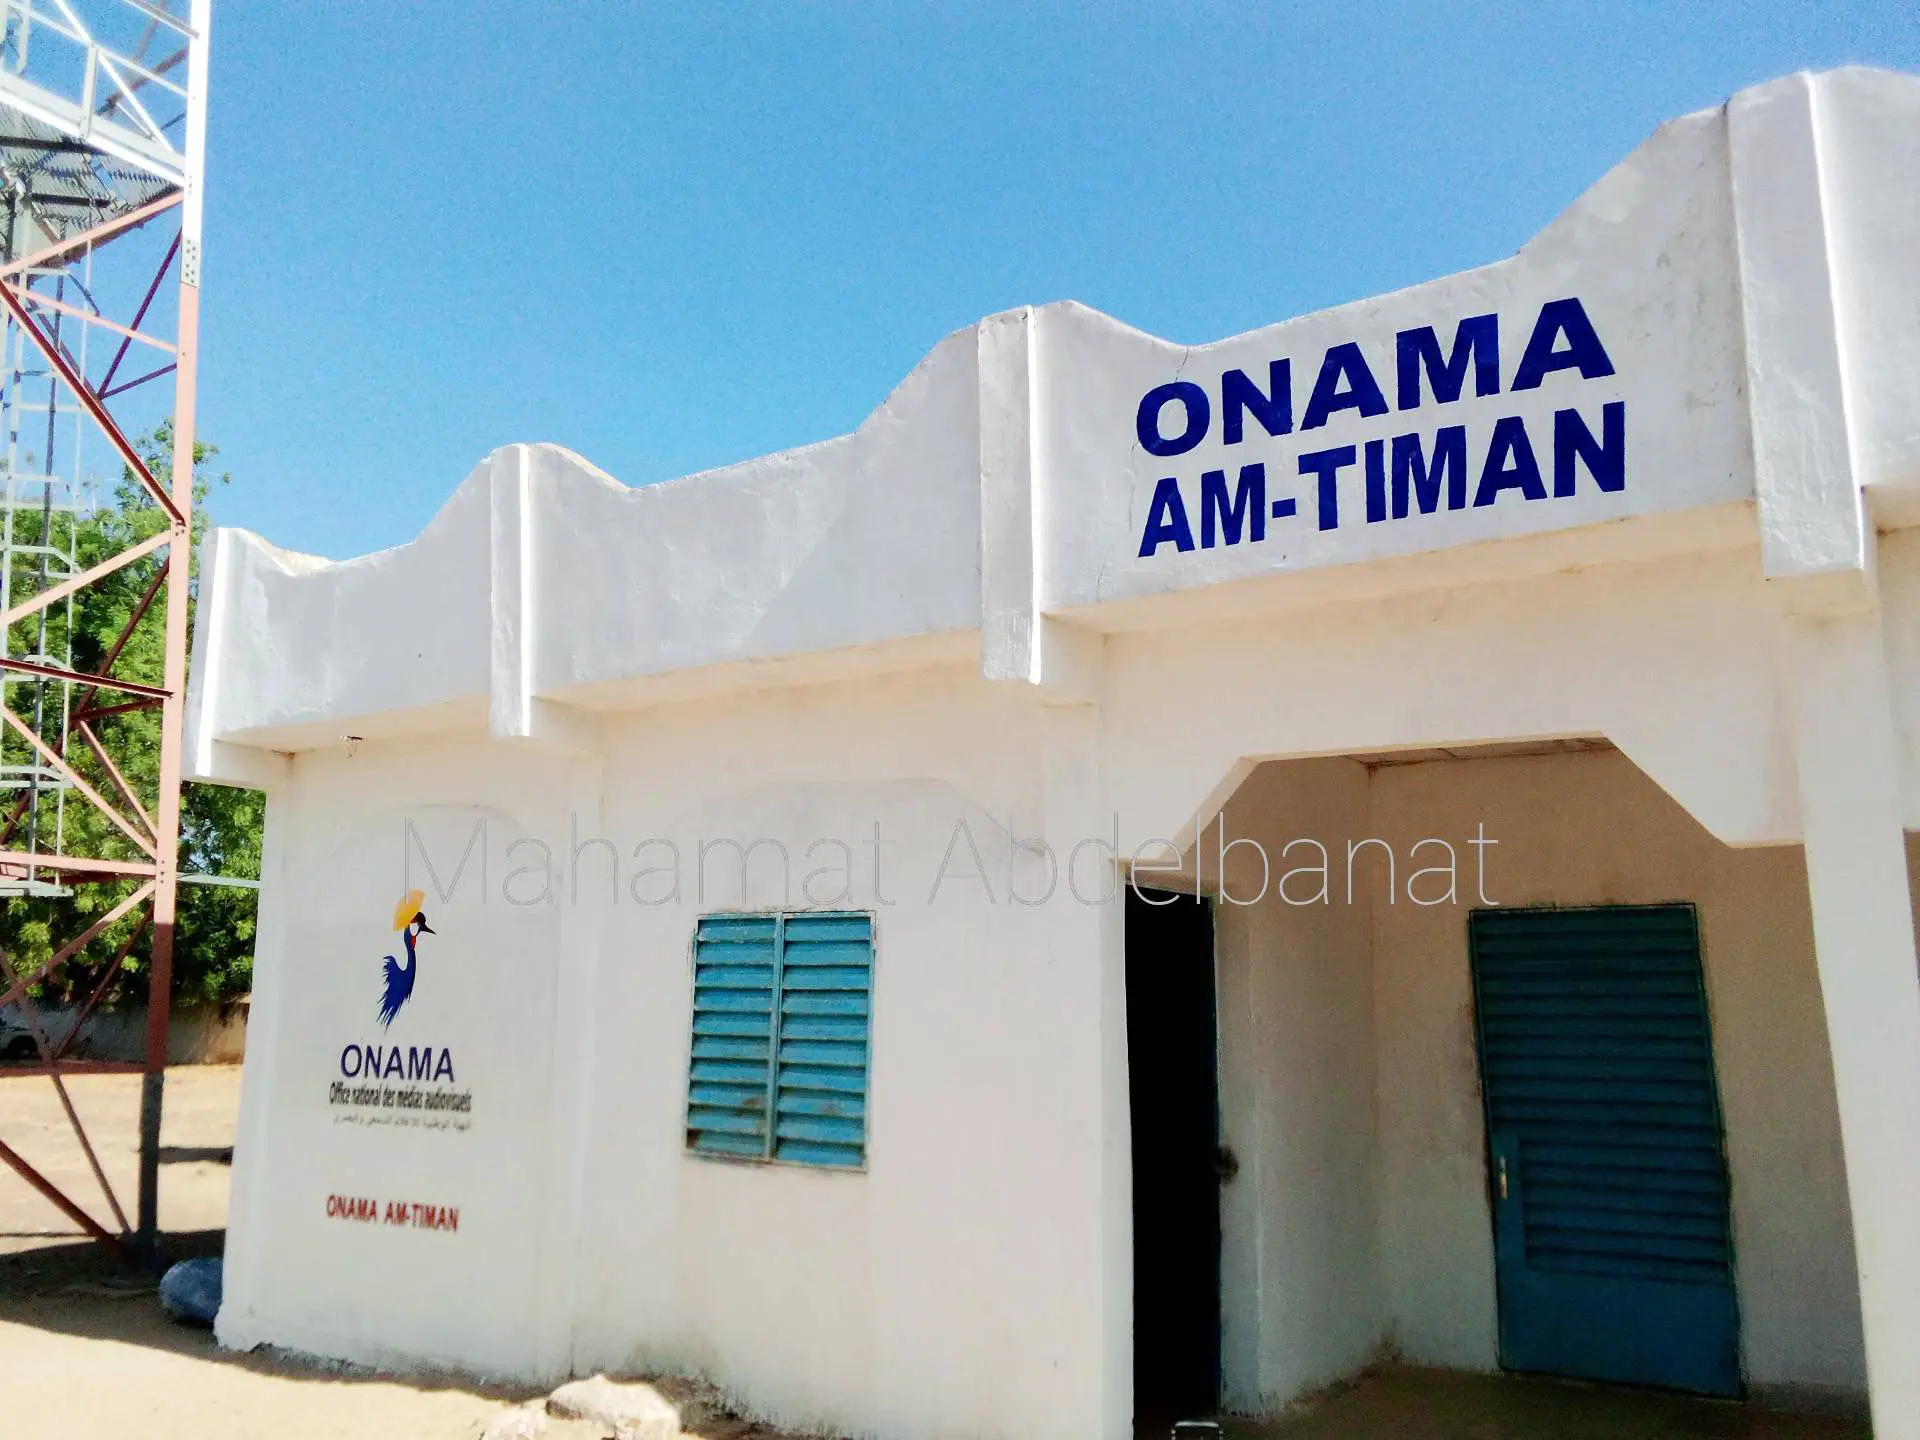 Tchad : ONAMA Am-Timan lance sa nouvelle grille des programmes